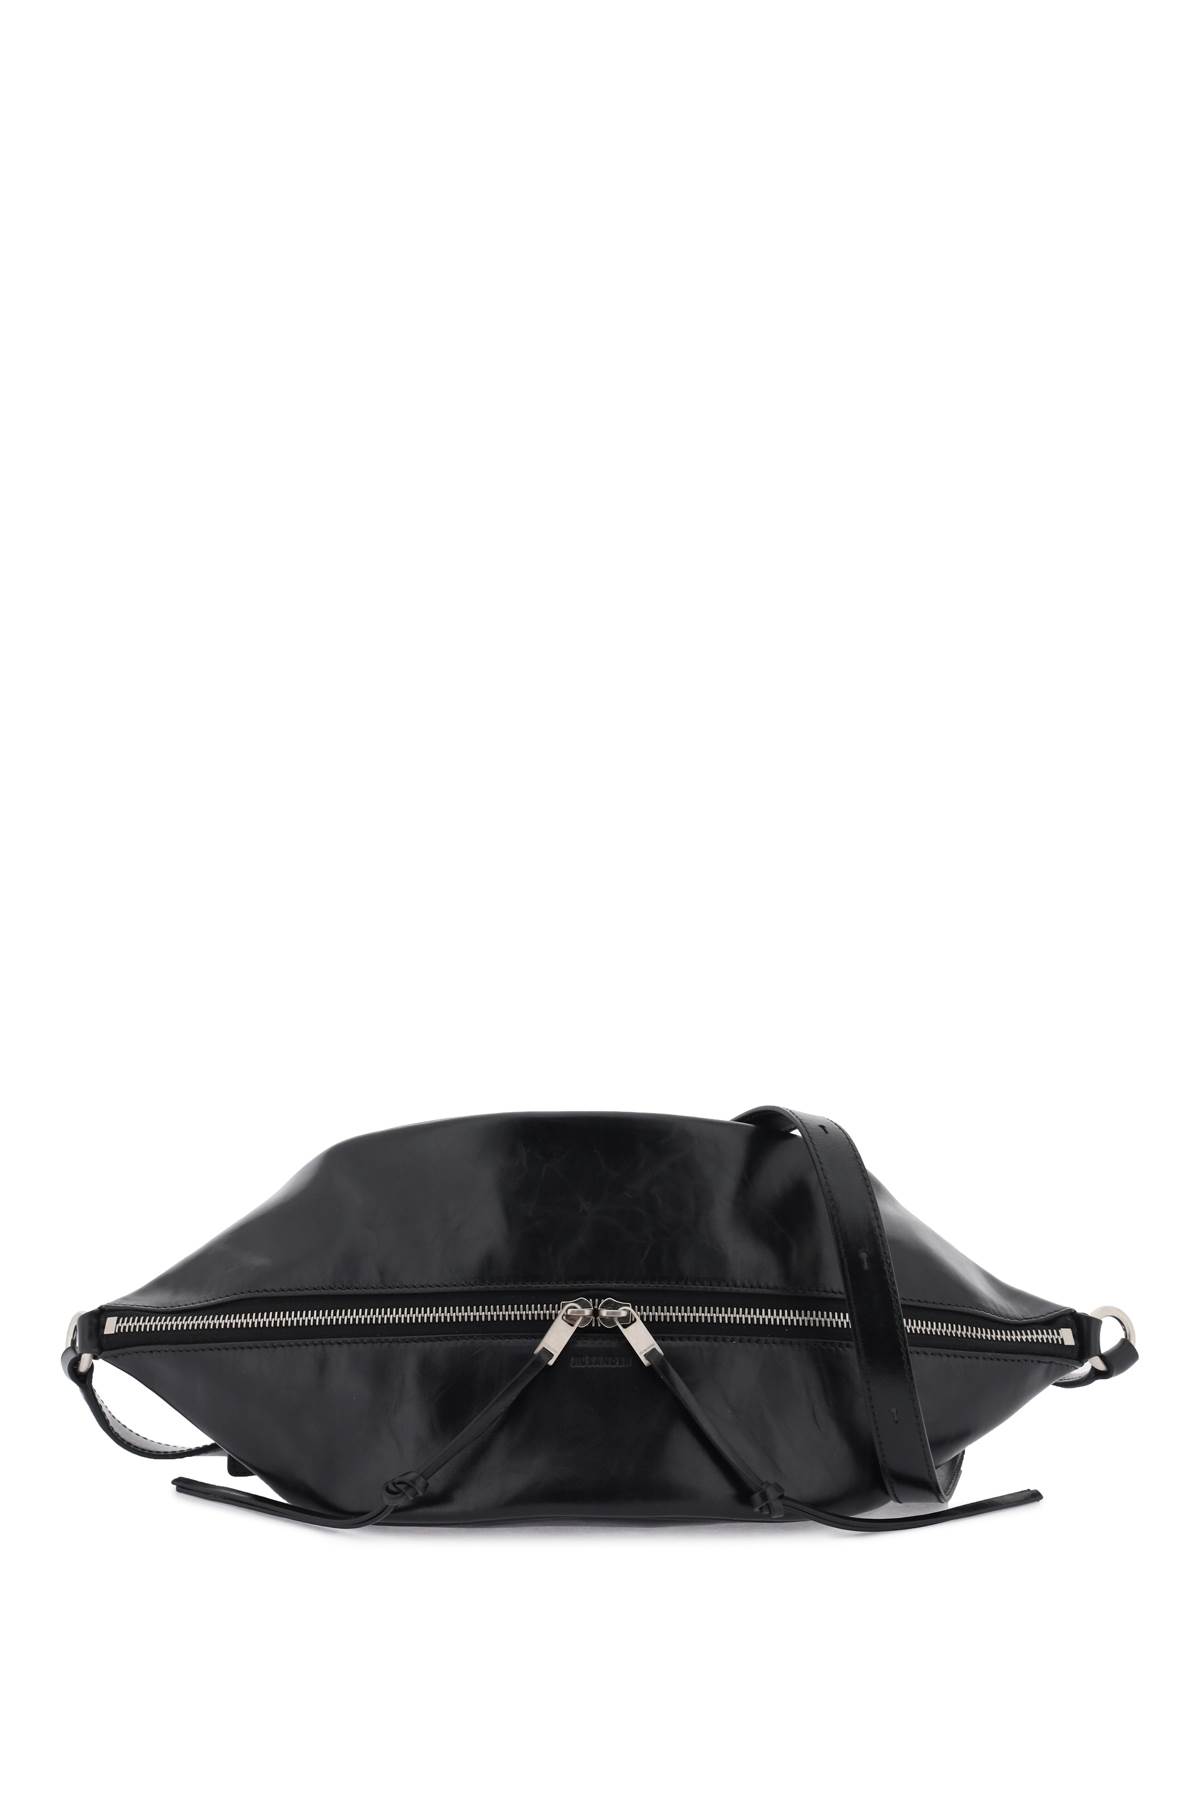 Jil Sander Medium Shoulder Bag In Brushed Leather